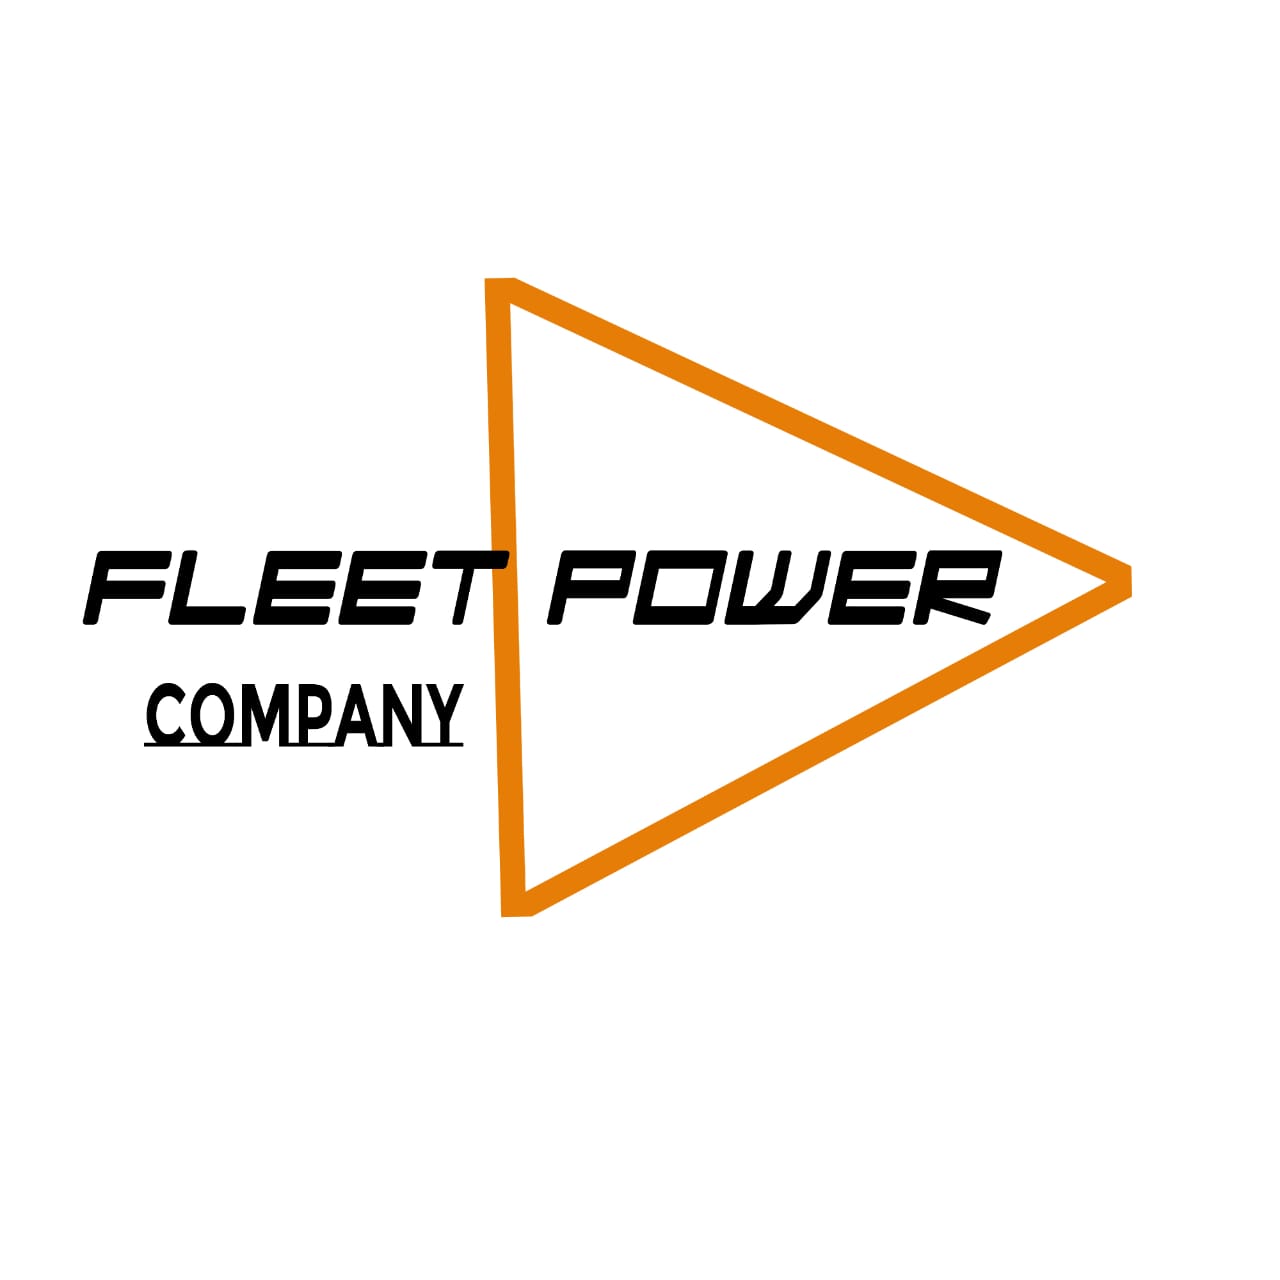 Fleet Power